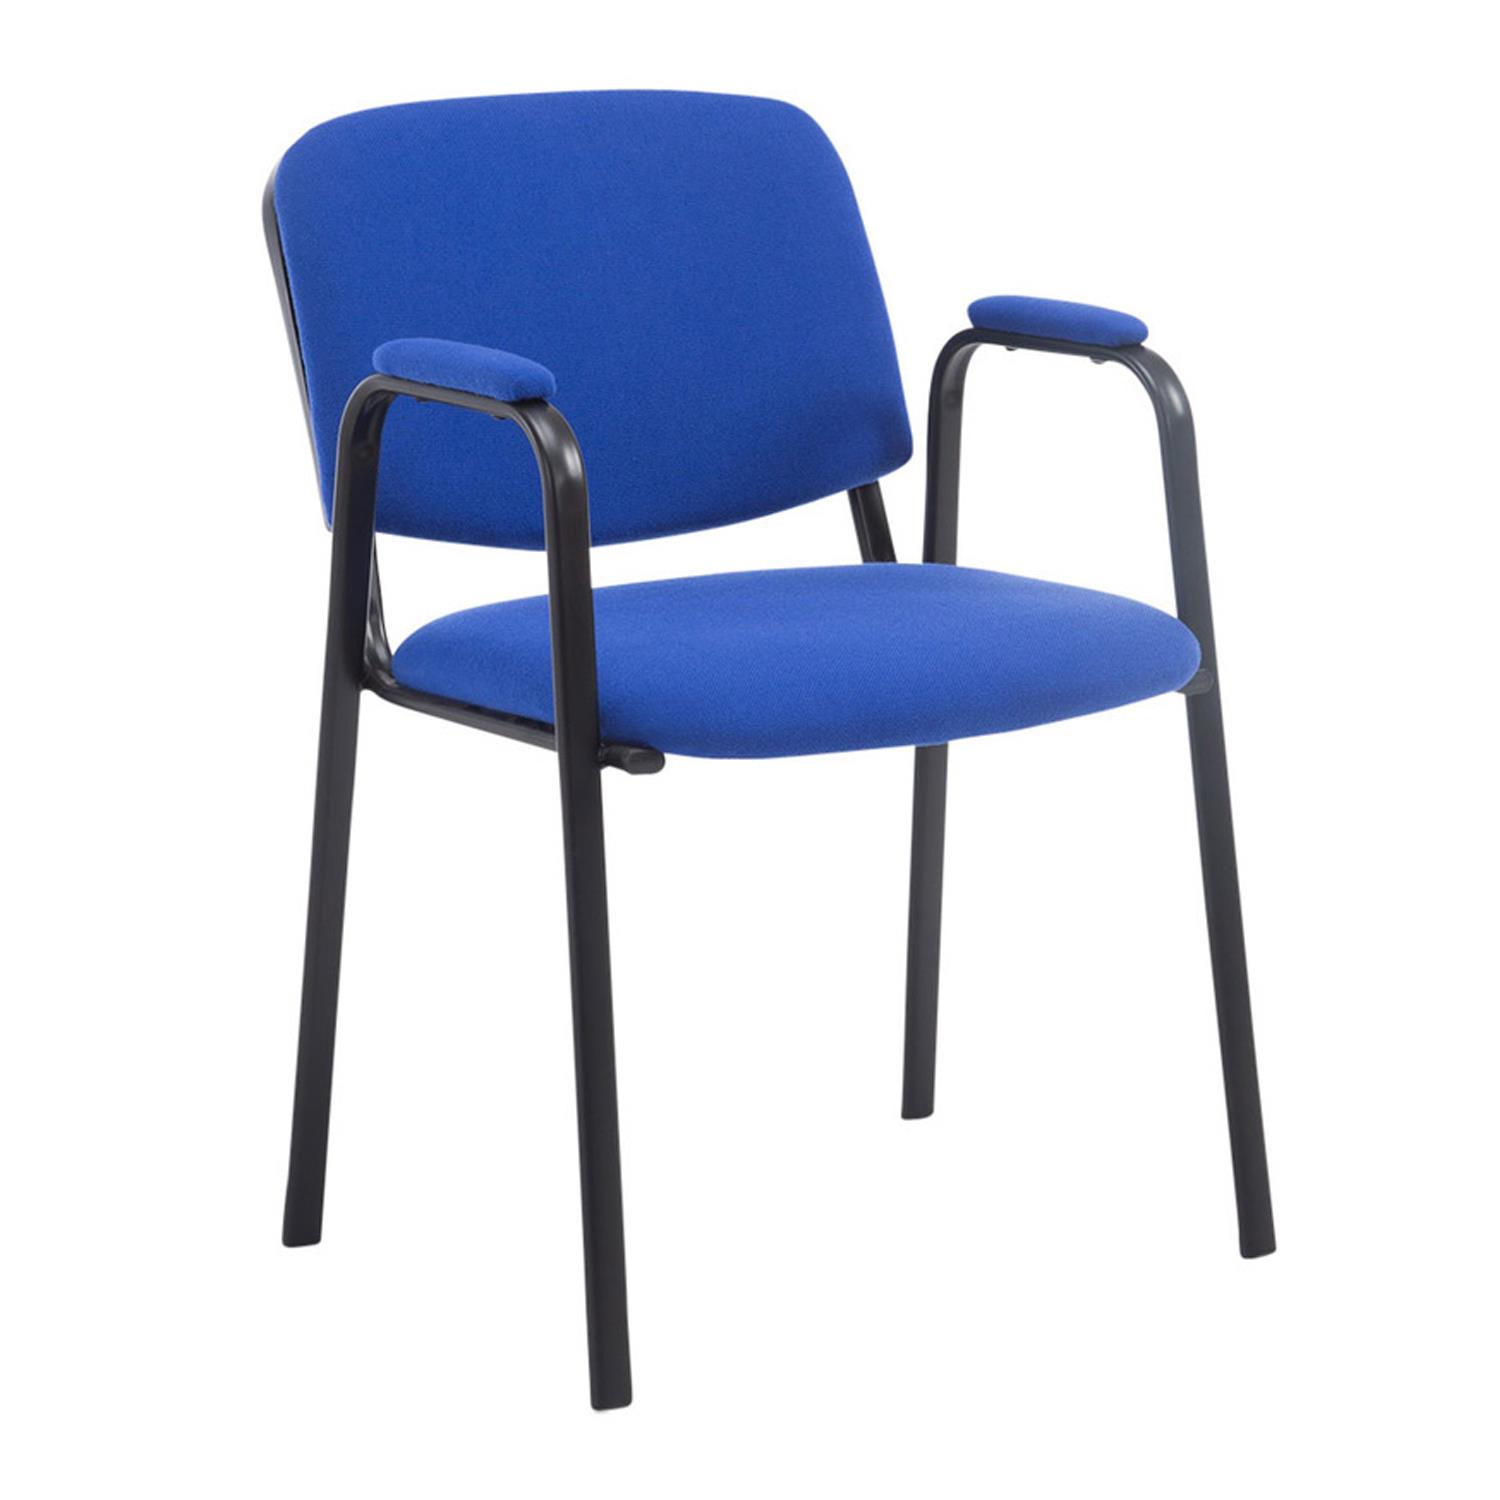 Cadeira de Visita MOBY COM BRAÇOS, Conforto, Pernas Pretas, Cor Azul